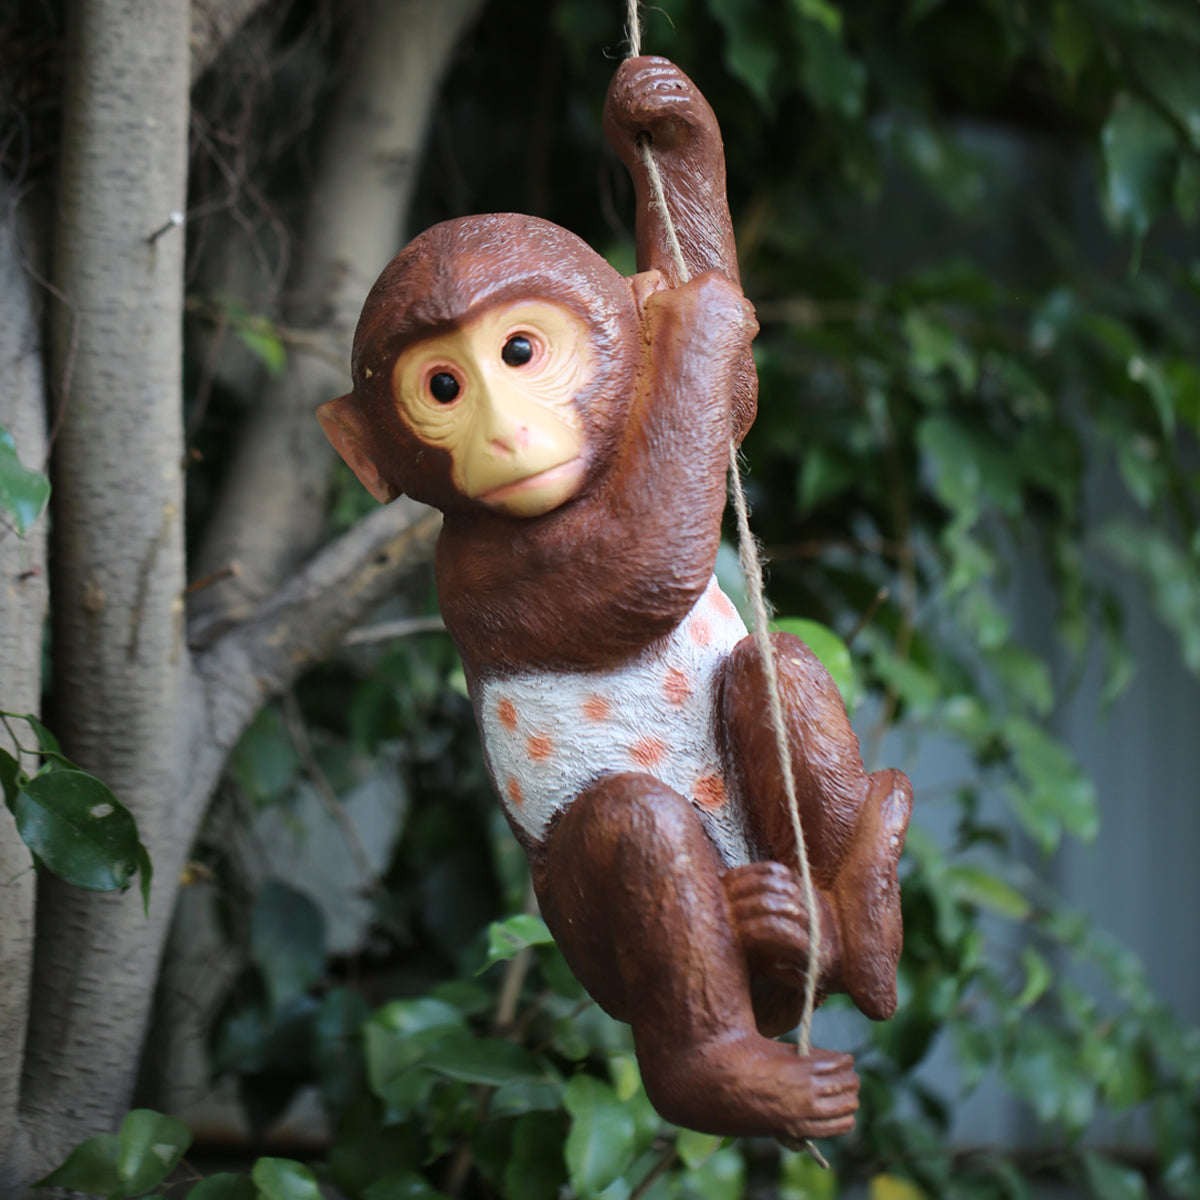 buy monkey on rope garden décor online india — Wonderland Garden